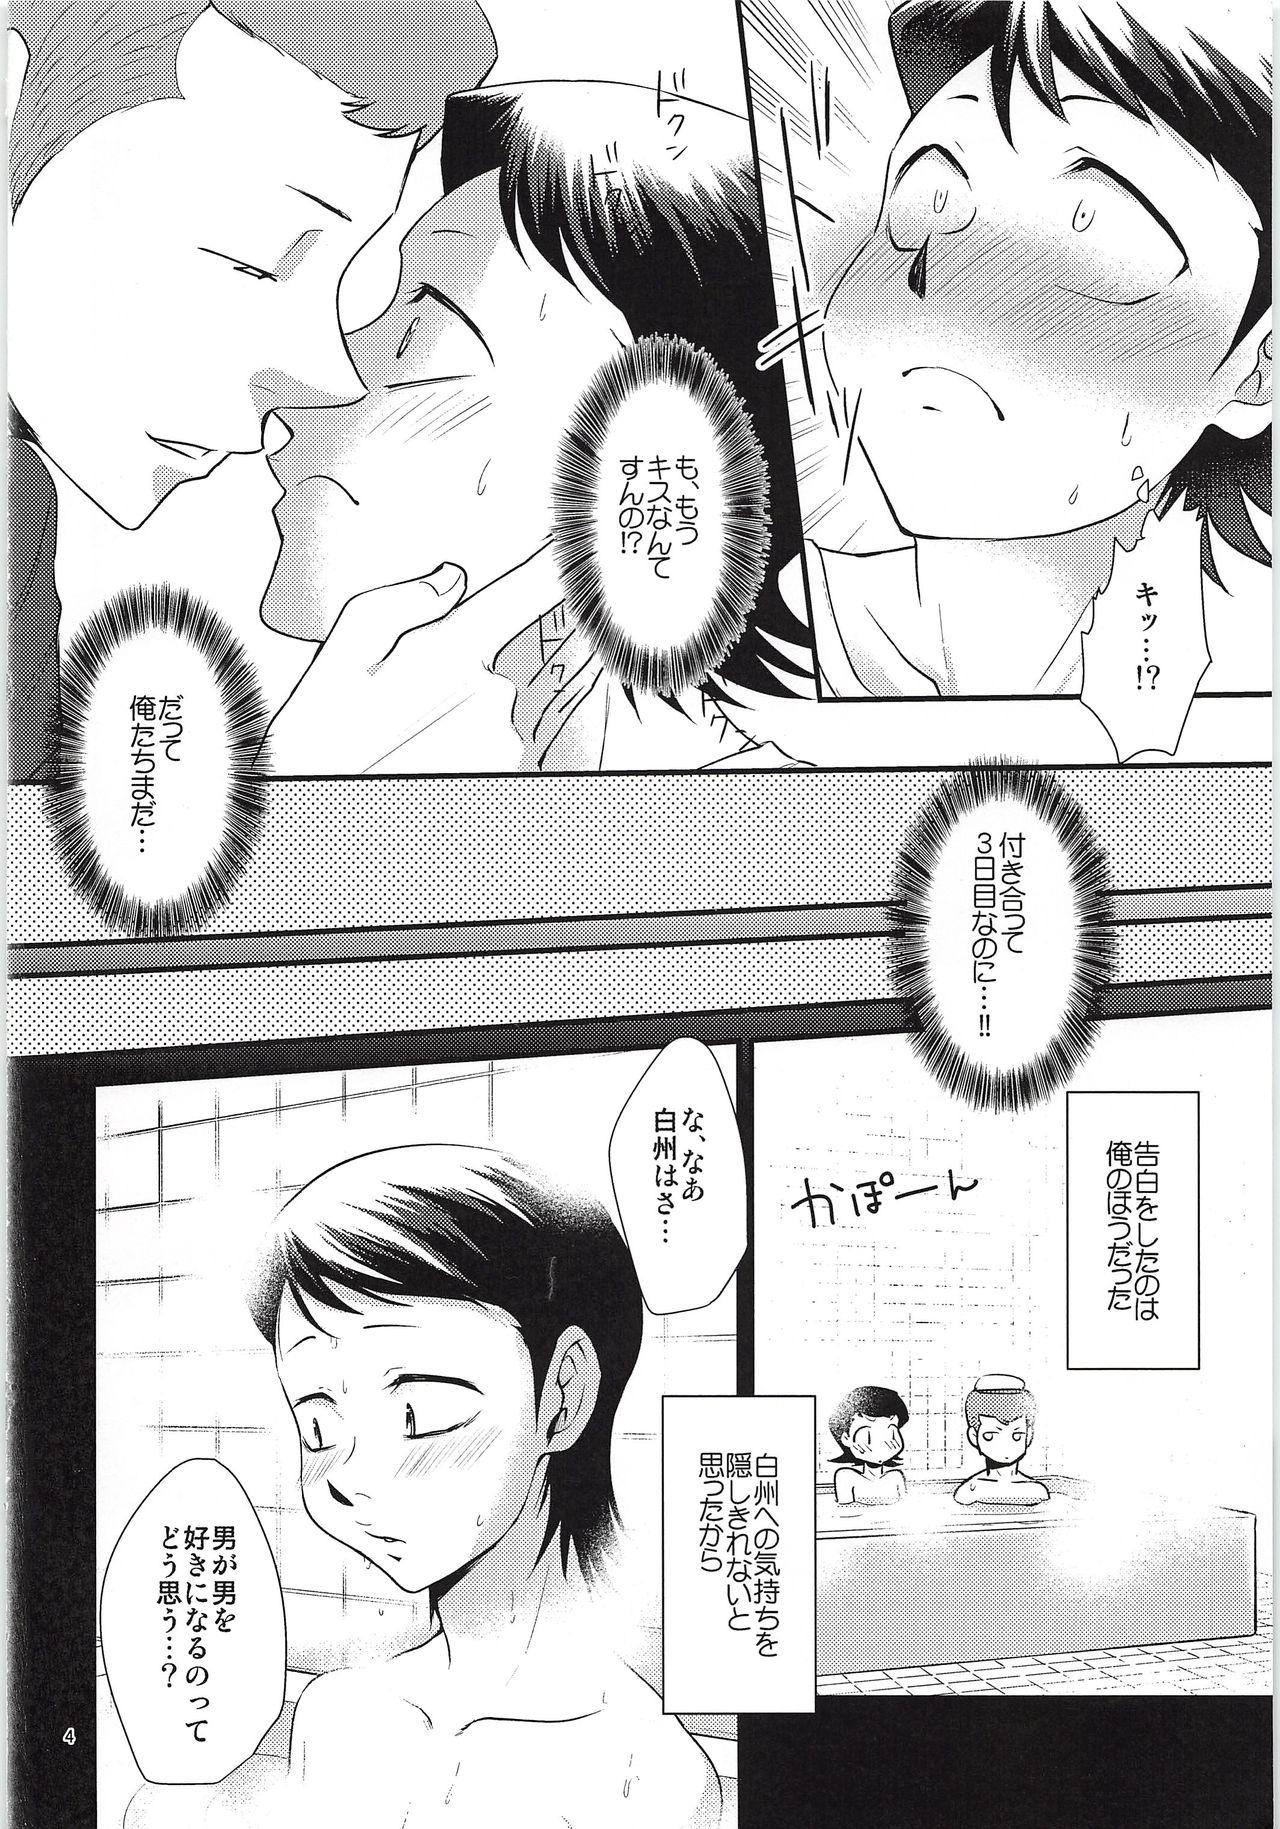 Sexcam Tsukiatte 3 Nichimenanoni Kareshi ga Guigui Semetekuru Ken - Daiya no ace Worship - Page 3